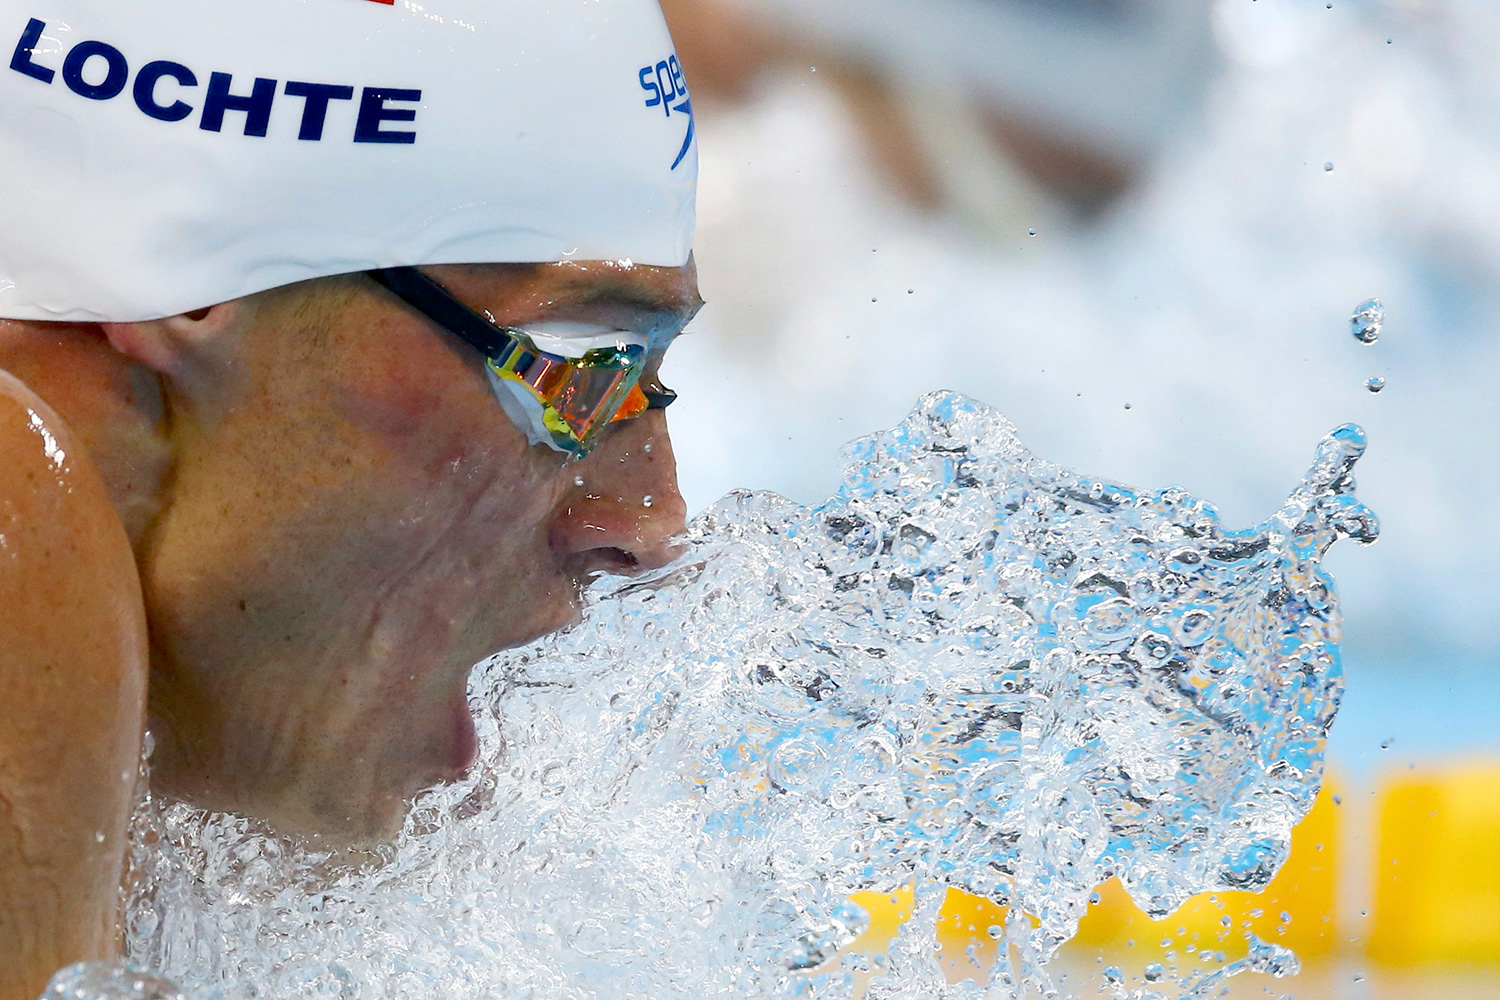 Ryan Lochte, sancionado con diez meses sin competir tras el escándalo que protagonizó en Río 2016